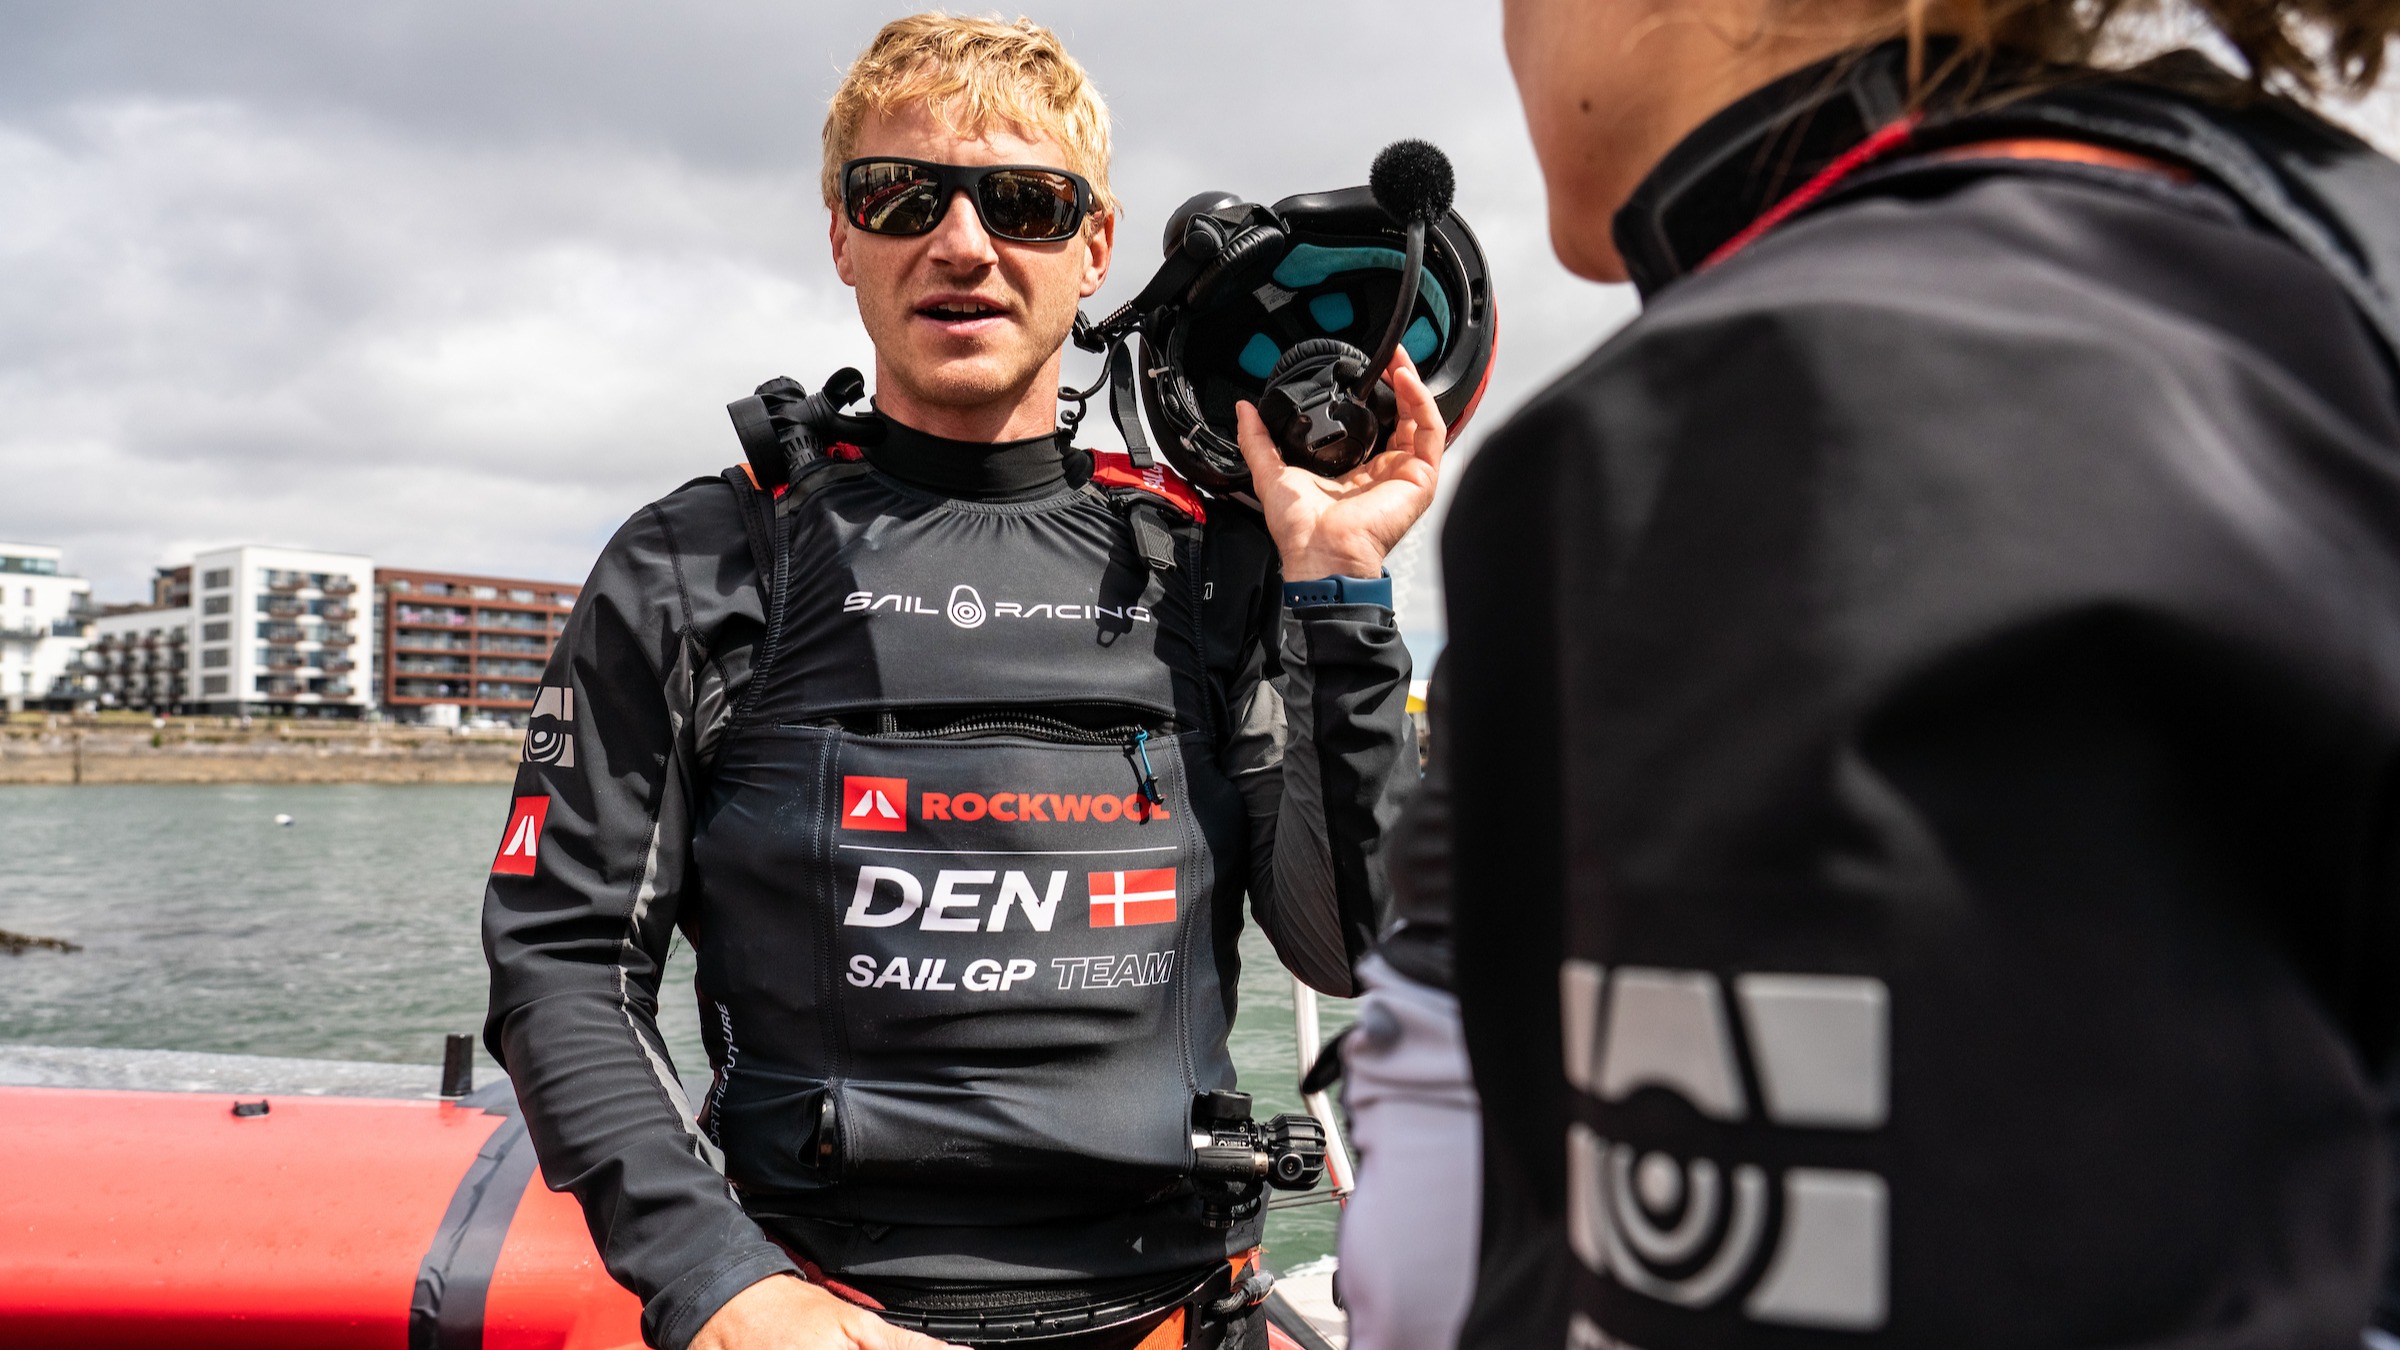 Saison 3 // Danemark SailGP Team // Nicolai Sehested entre deux courses